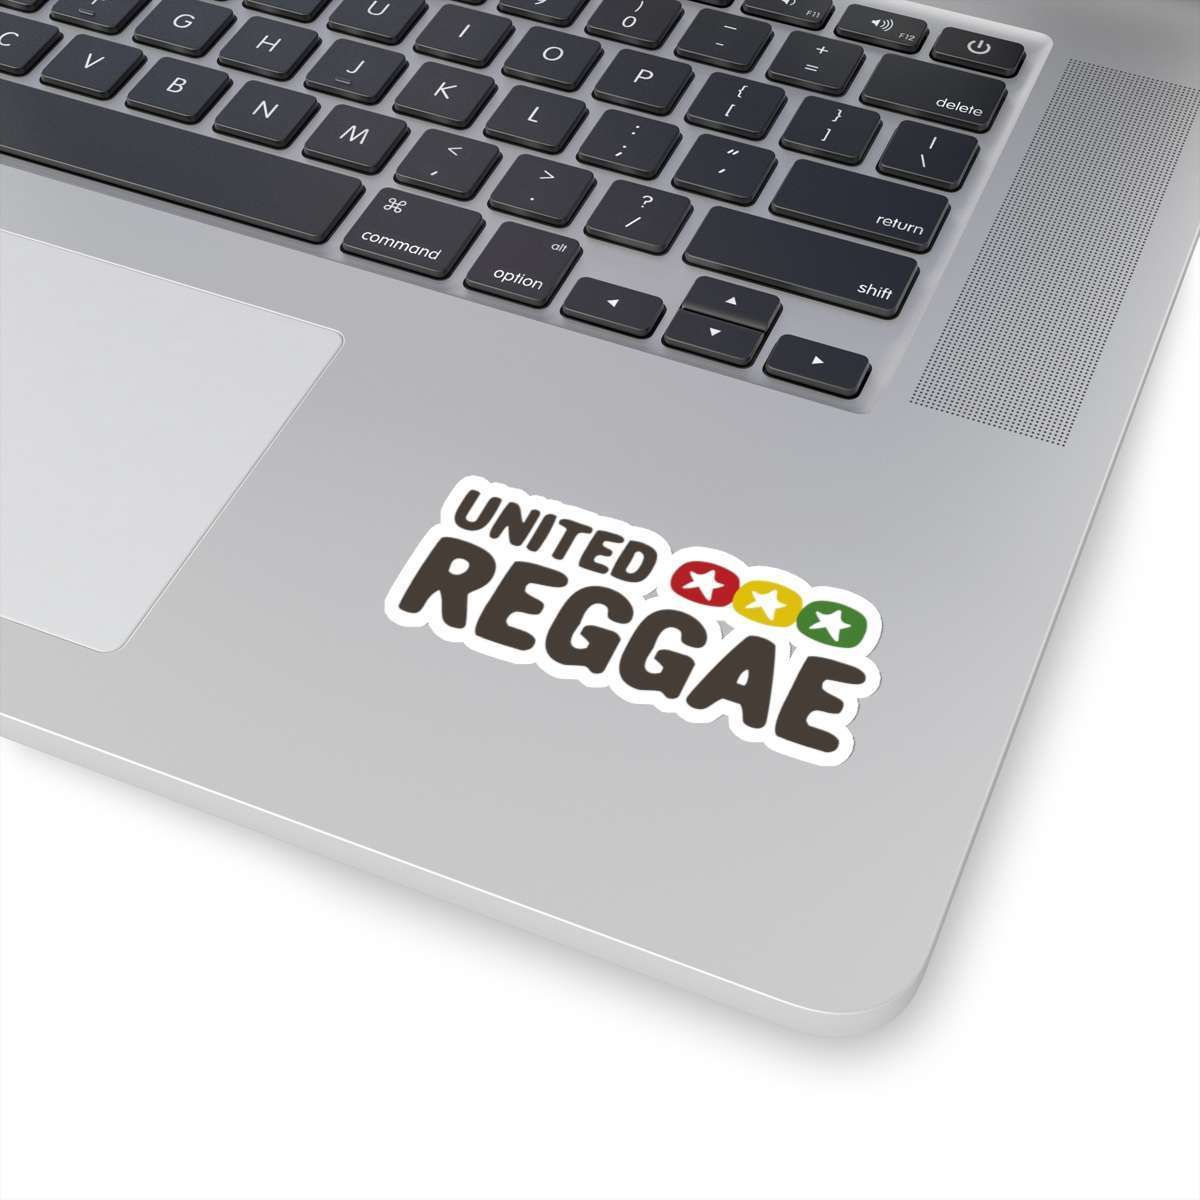 United Reggae Music Stickers